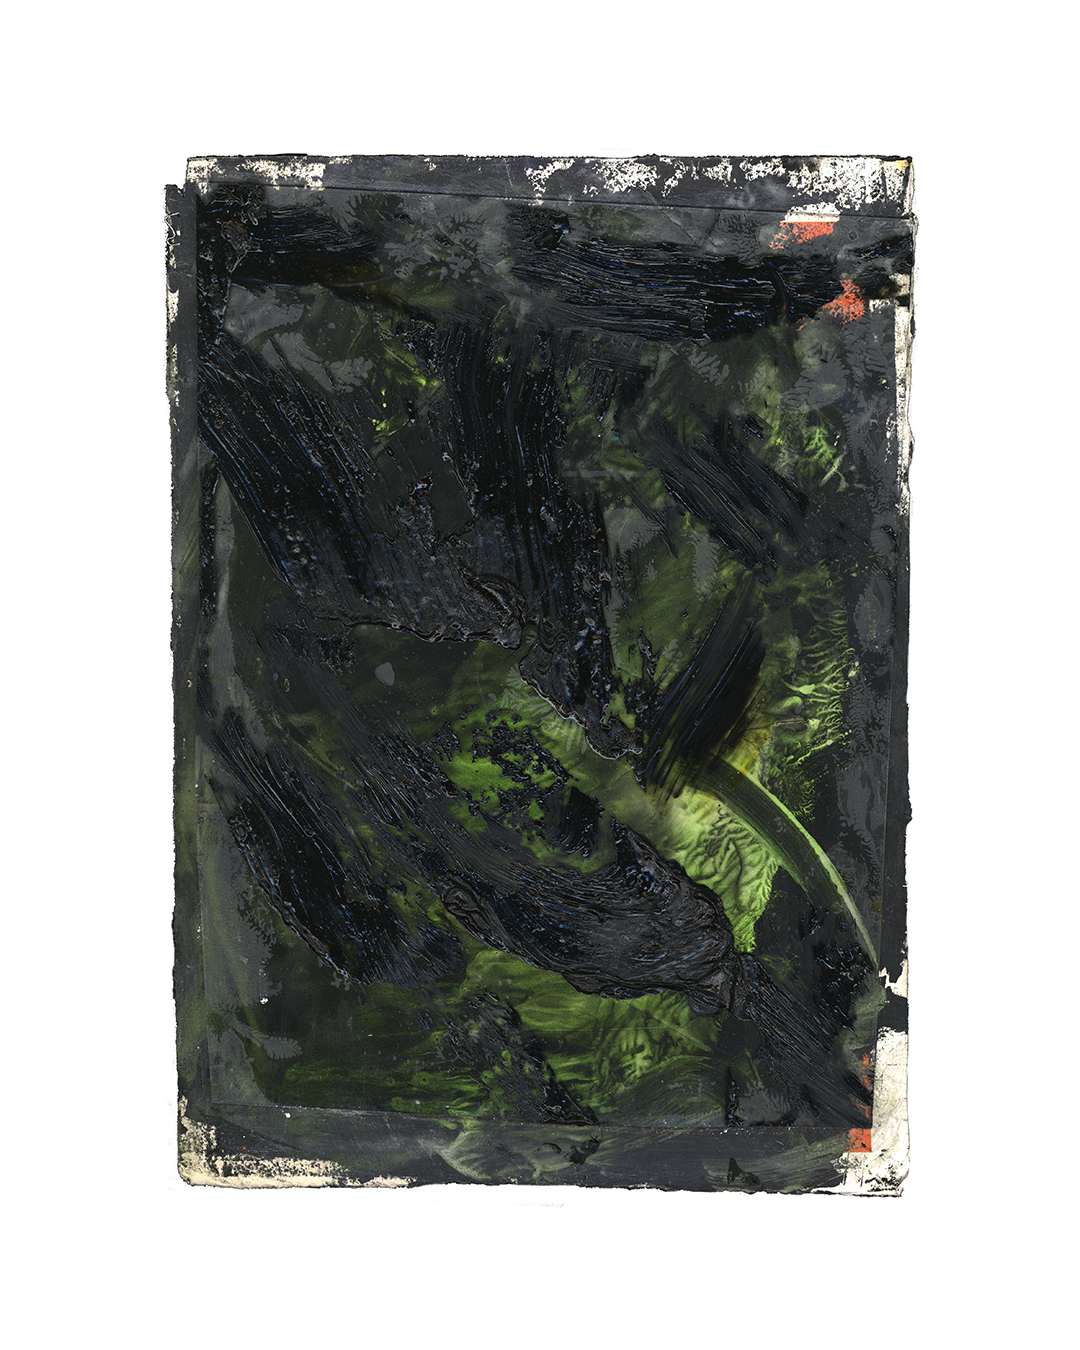 Piet Dieleman, zonder titel, 2020, schilderij, olieverf, pigment, glas, acrylverf op papier, 395 x 285 mm, €930